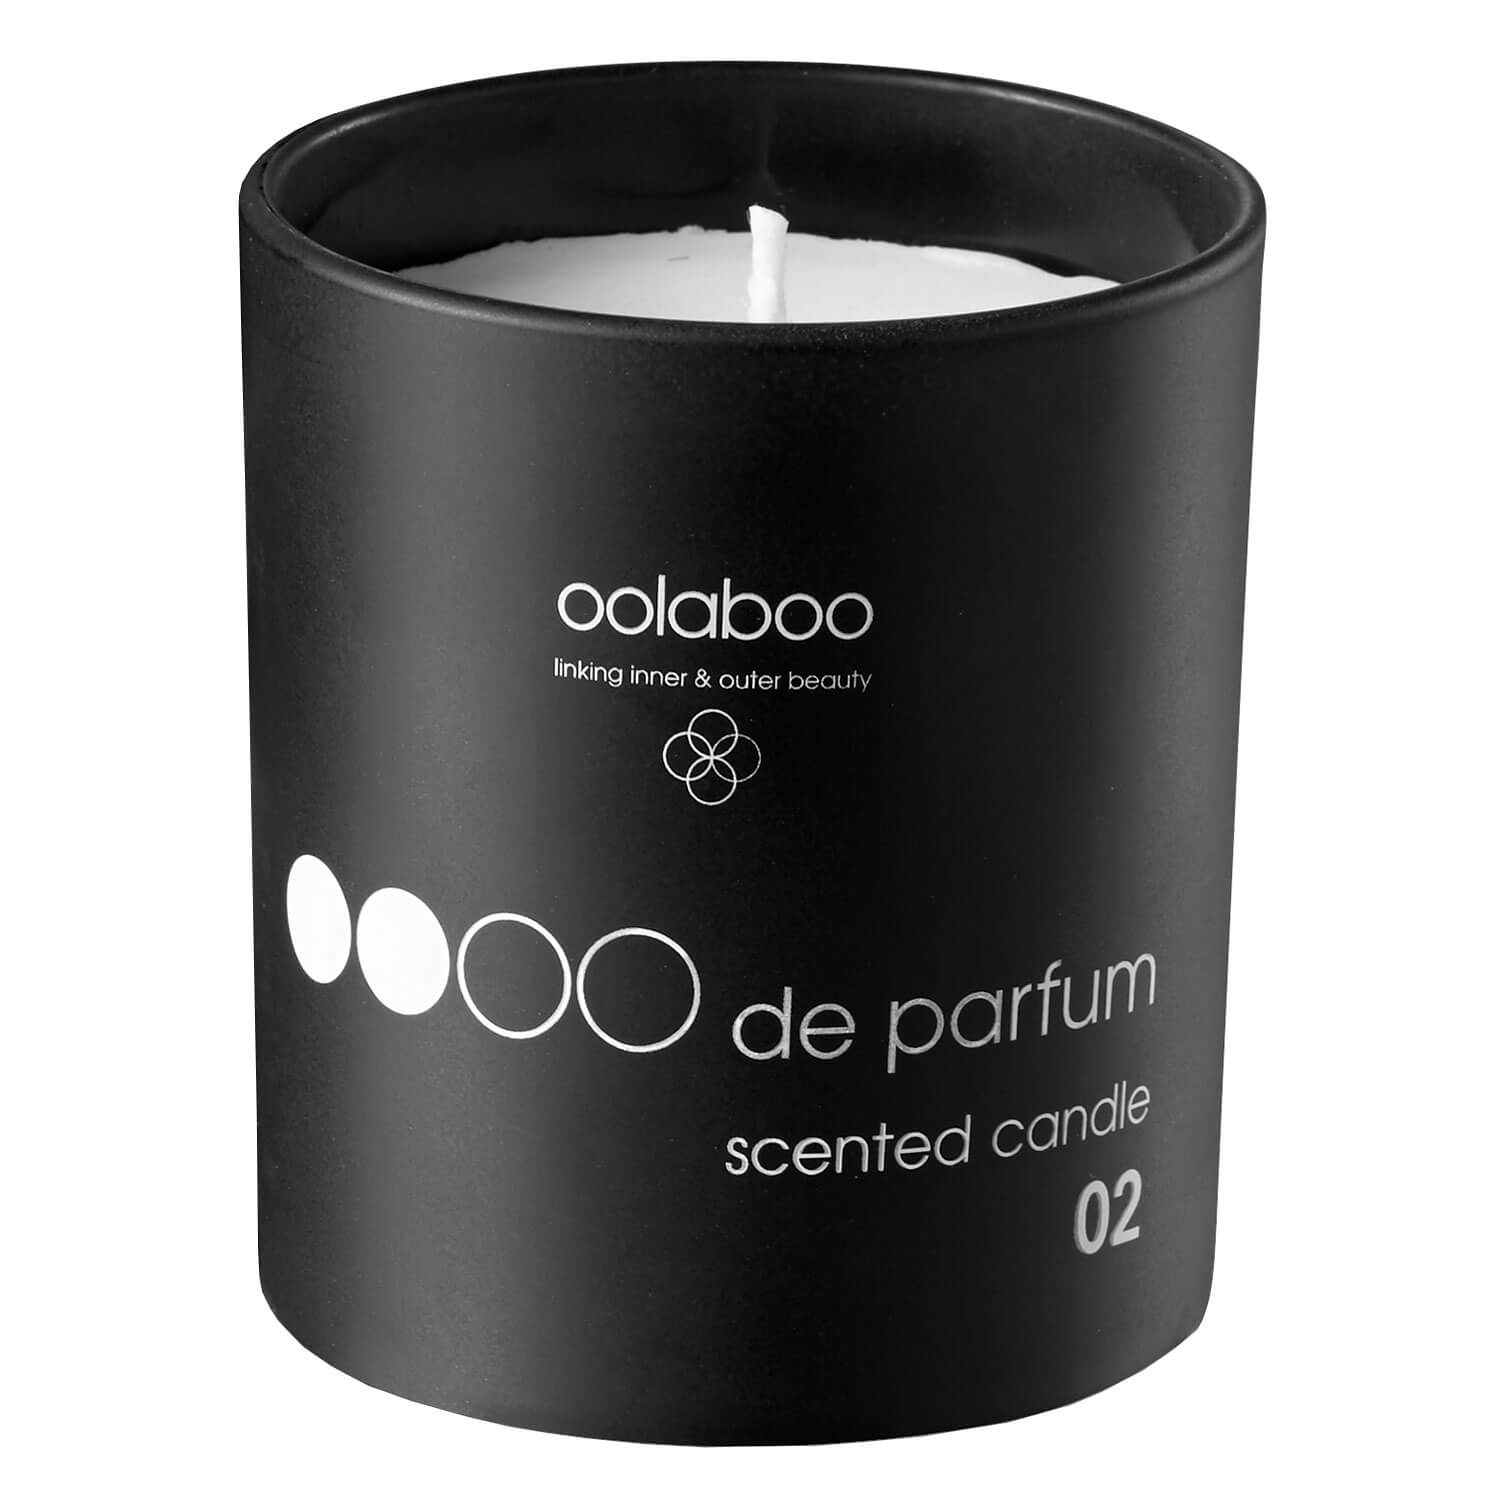 Produktbild von ambiance - scented candle sandalwood 02